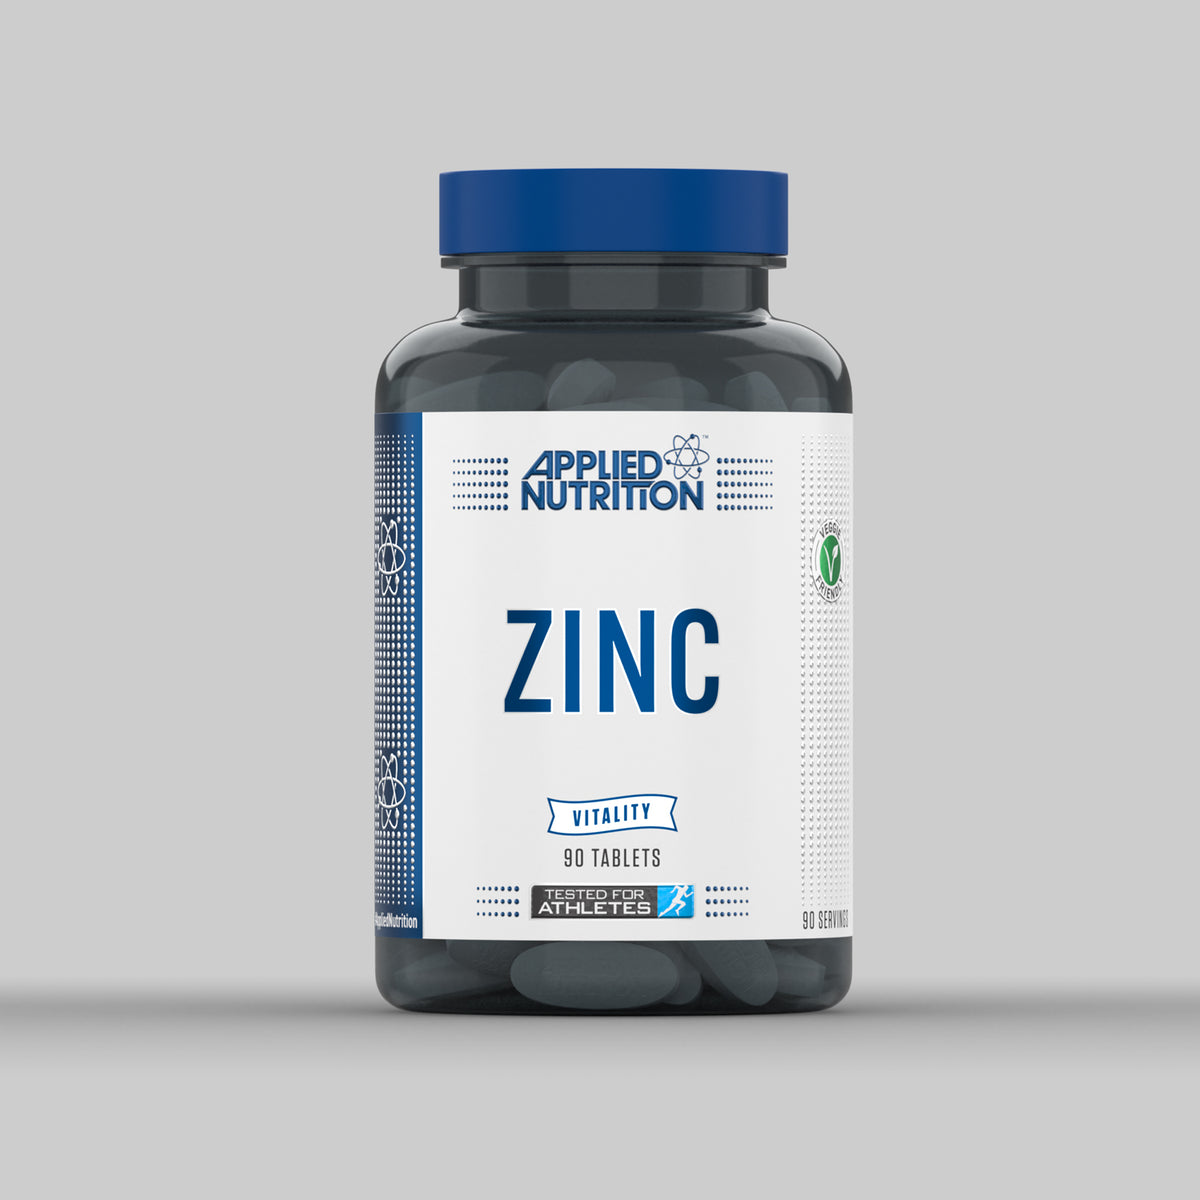 ZINC – Applied Nutrition Ltd